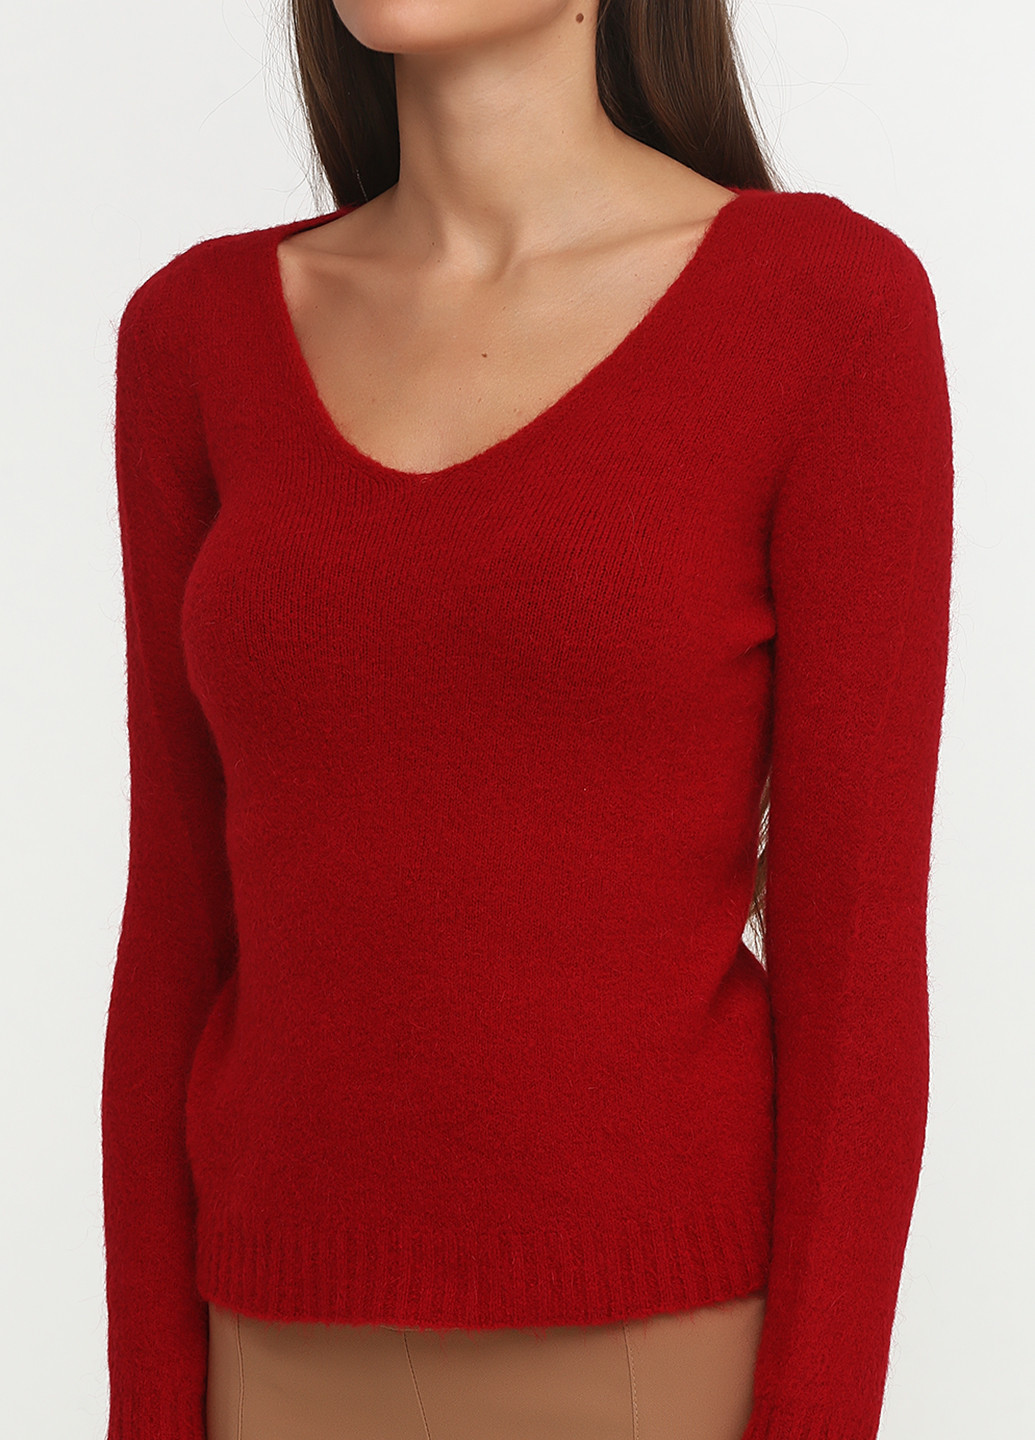 Красный зимний пуловер пуловер Rinascimento